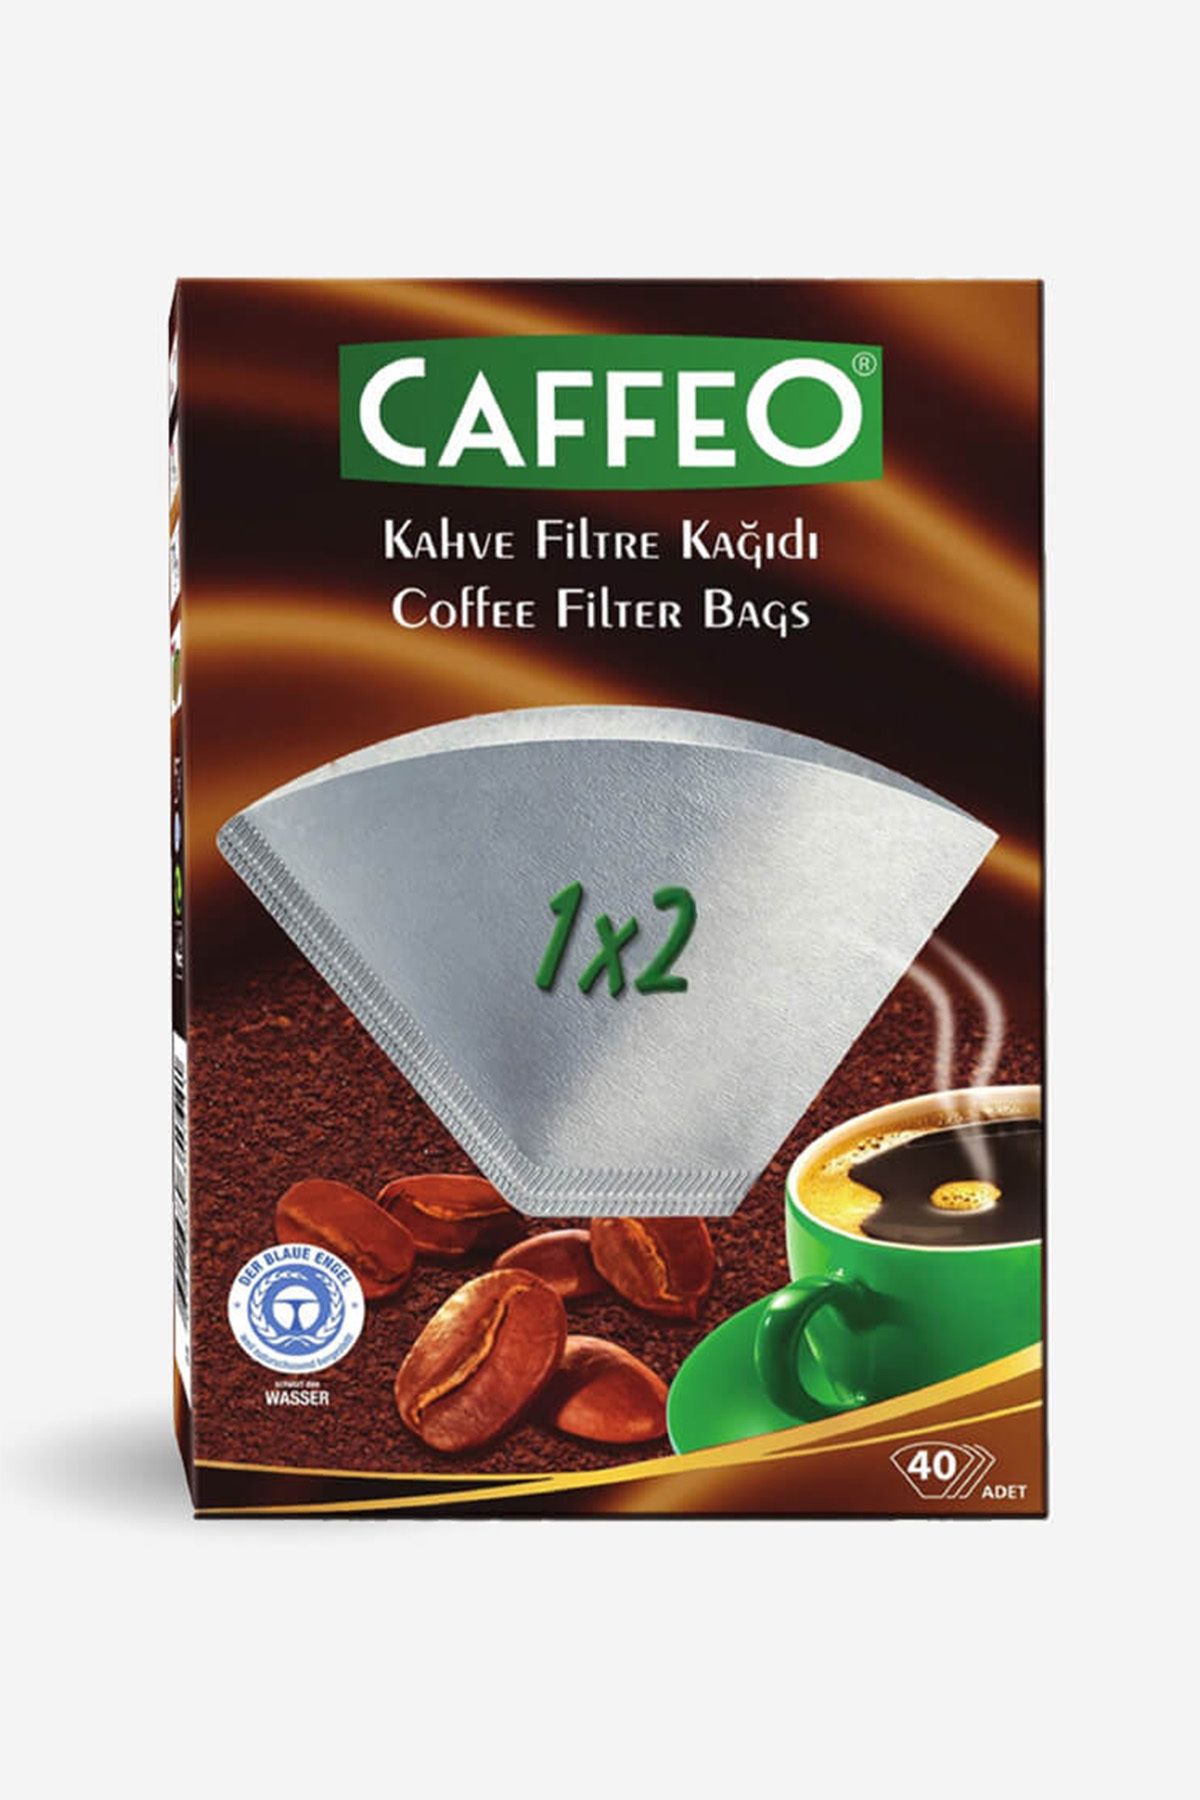 Caffeo Kahve Filtre Kağıdı Beyaz 1x2 | 40 Adet